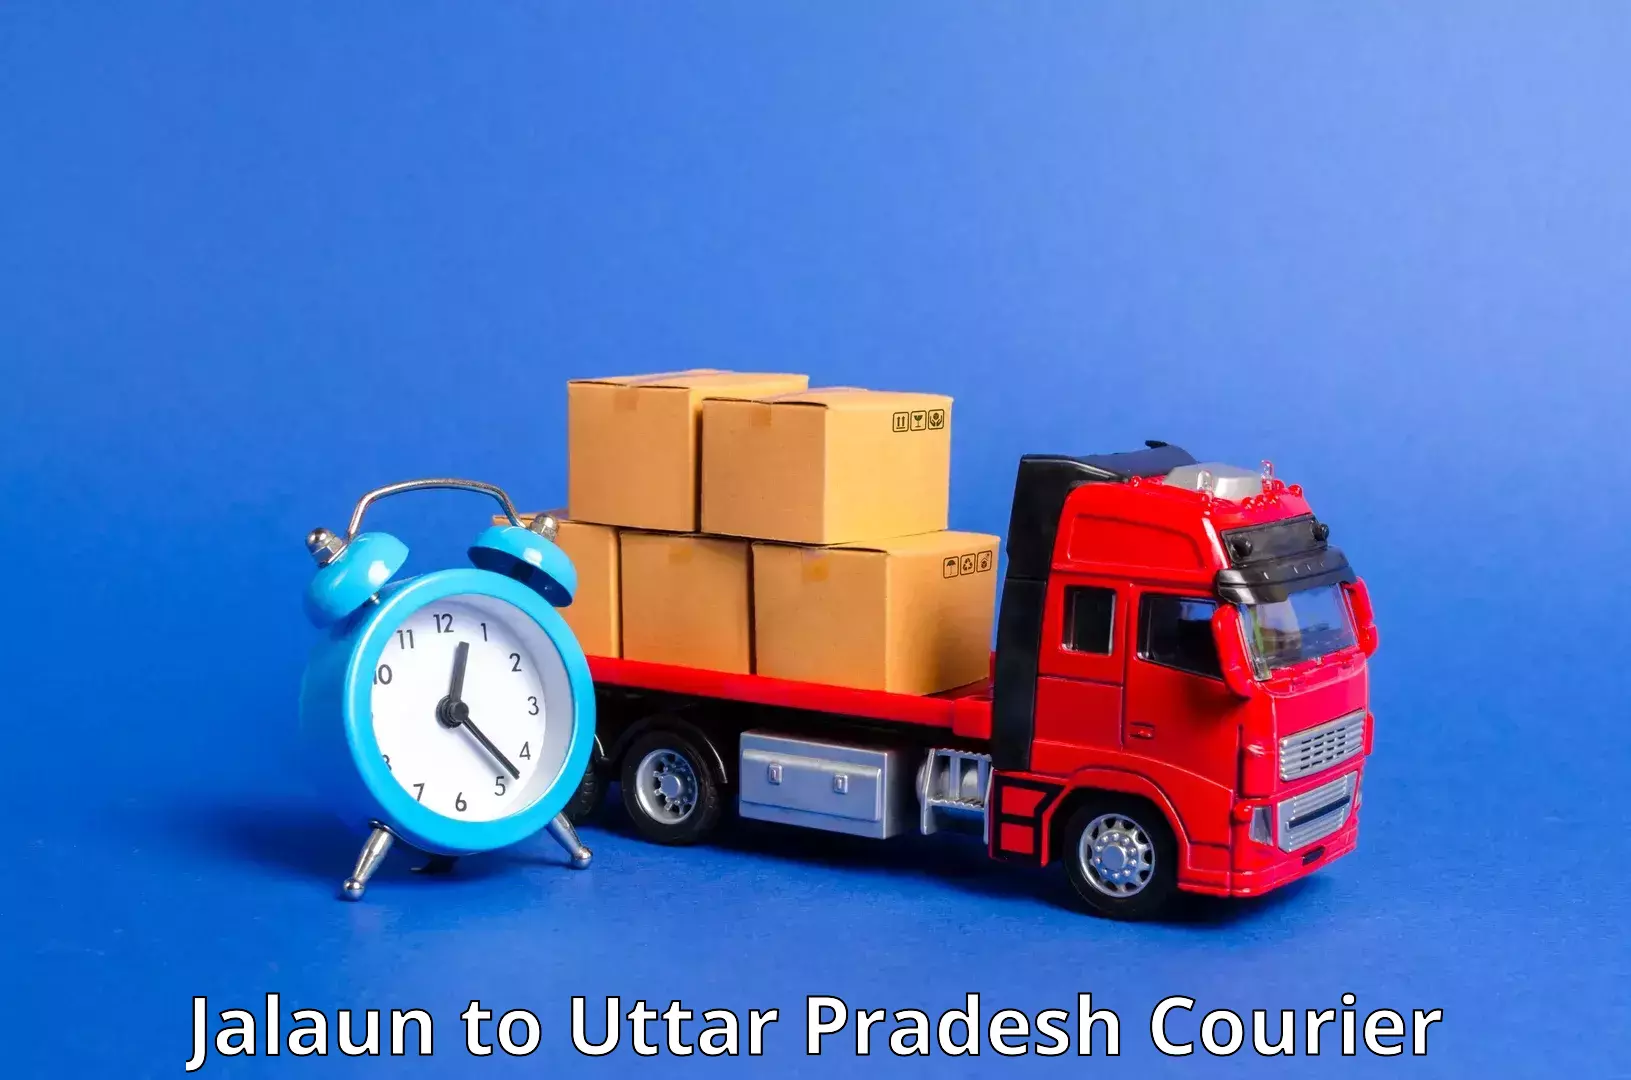 High-priority parcel service Jalaun to Mathura